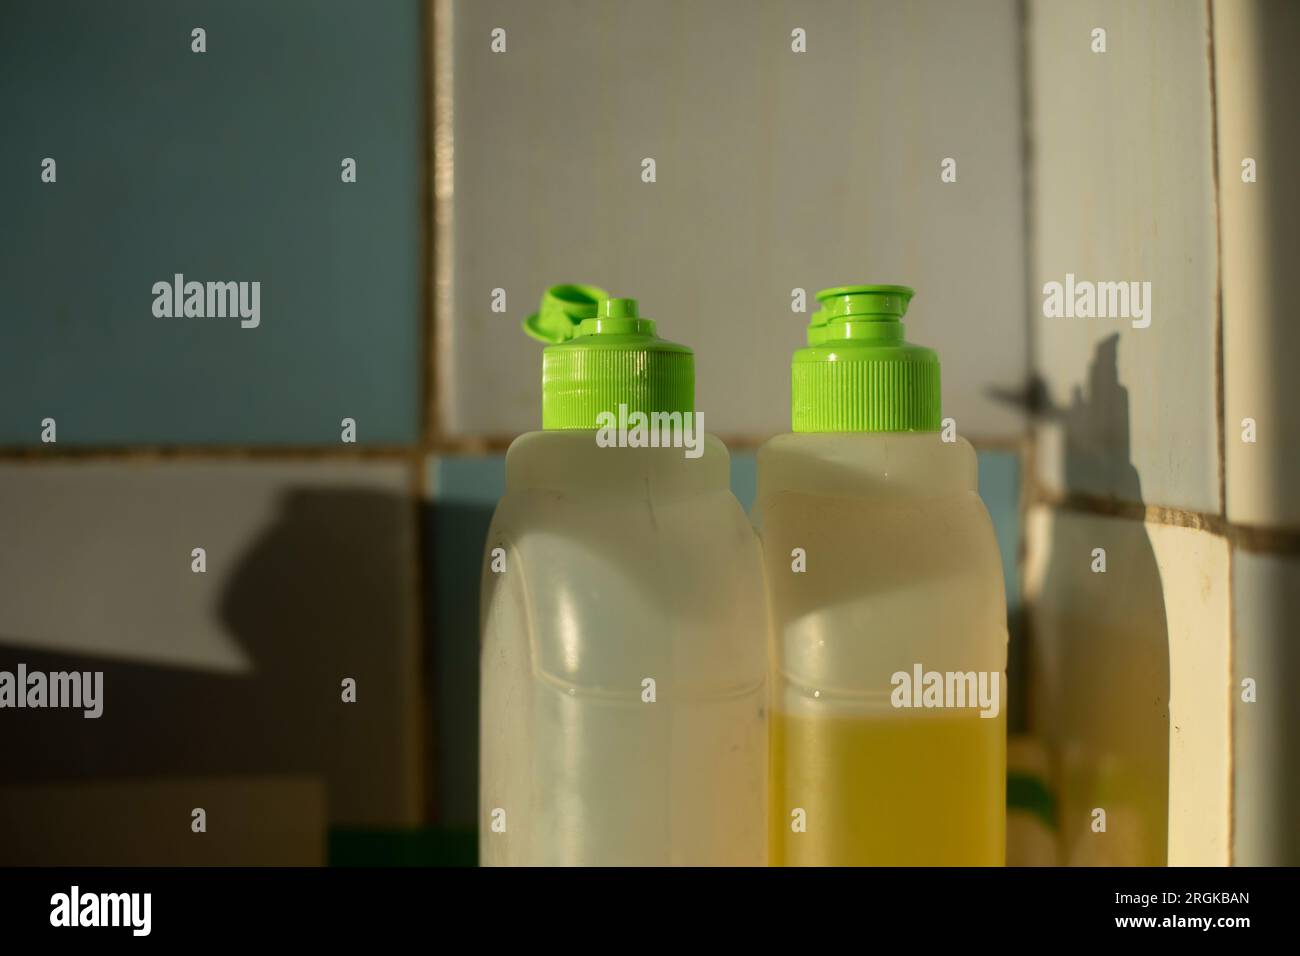 https://c8.alamy.com/comp/2RGKBAN/dishwashing-detergent-soap-in-bottle-green-cover-kitchen-details-2RGKBAN.jpg